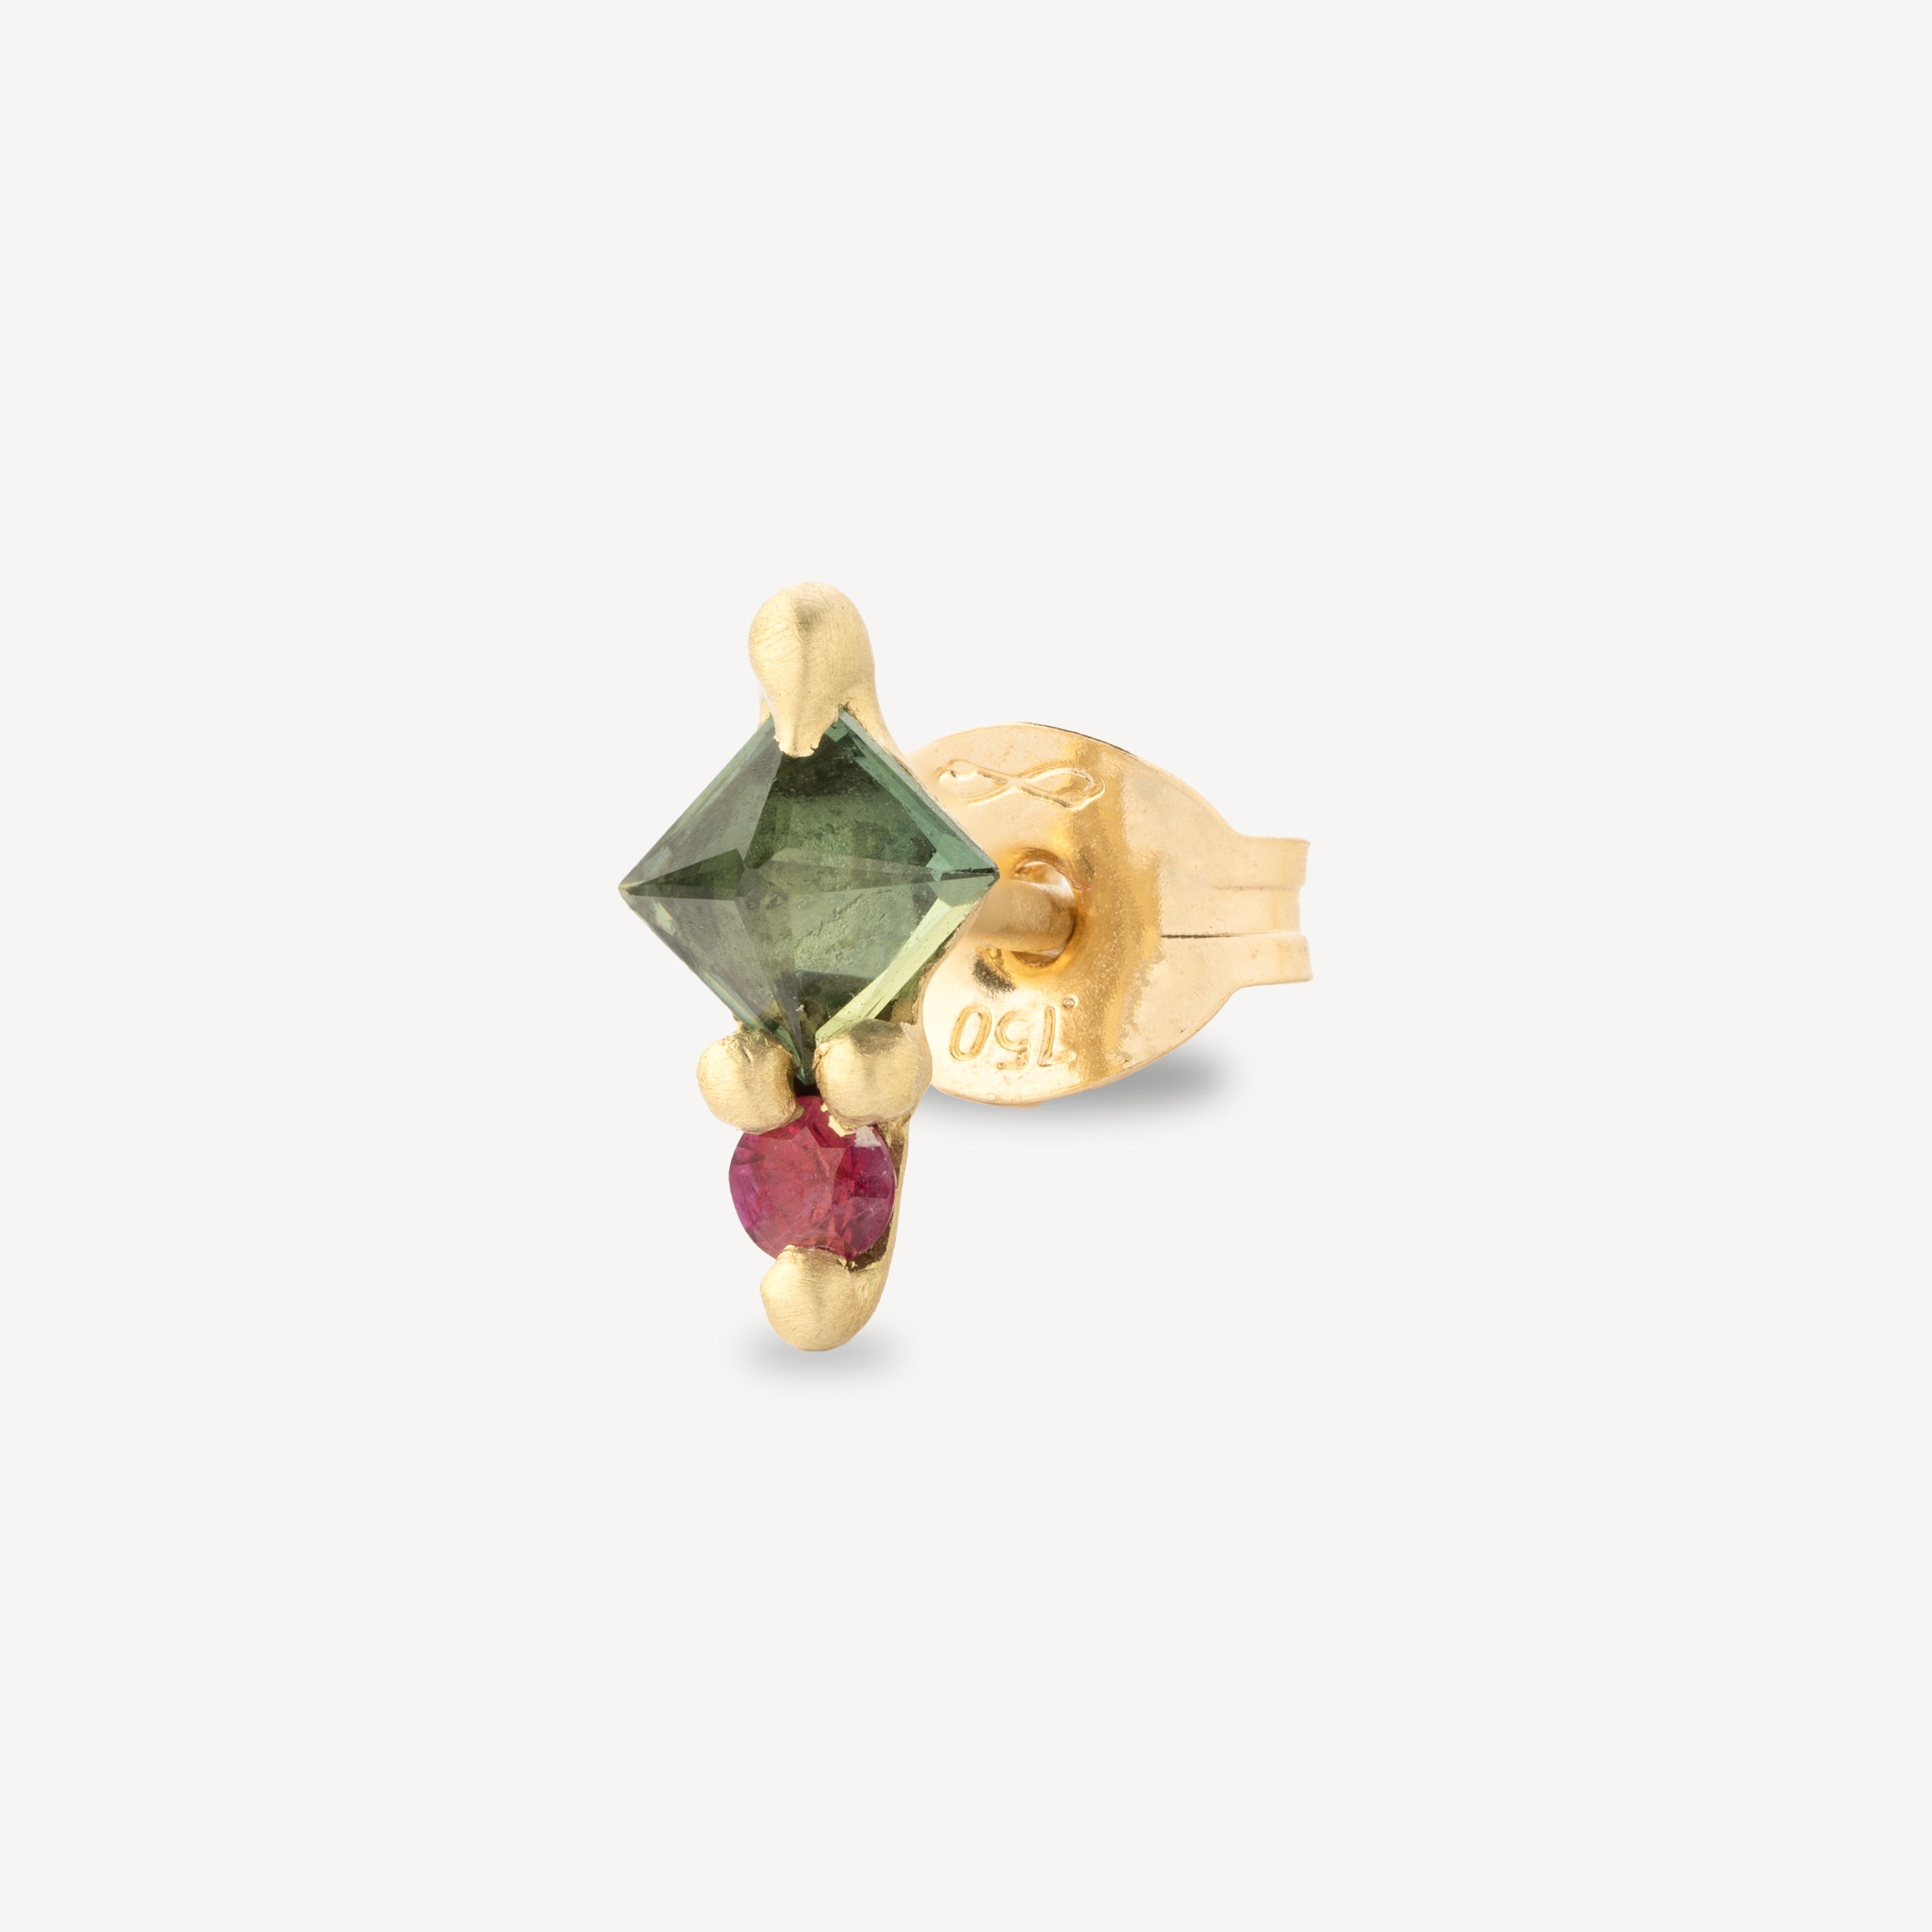 Kleiner geometrischer Ohrring in Grün und Rosa